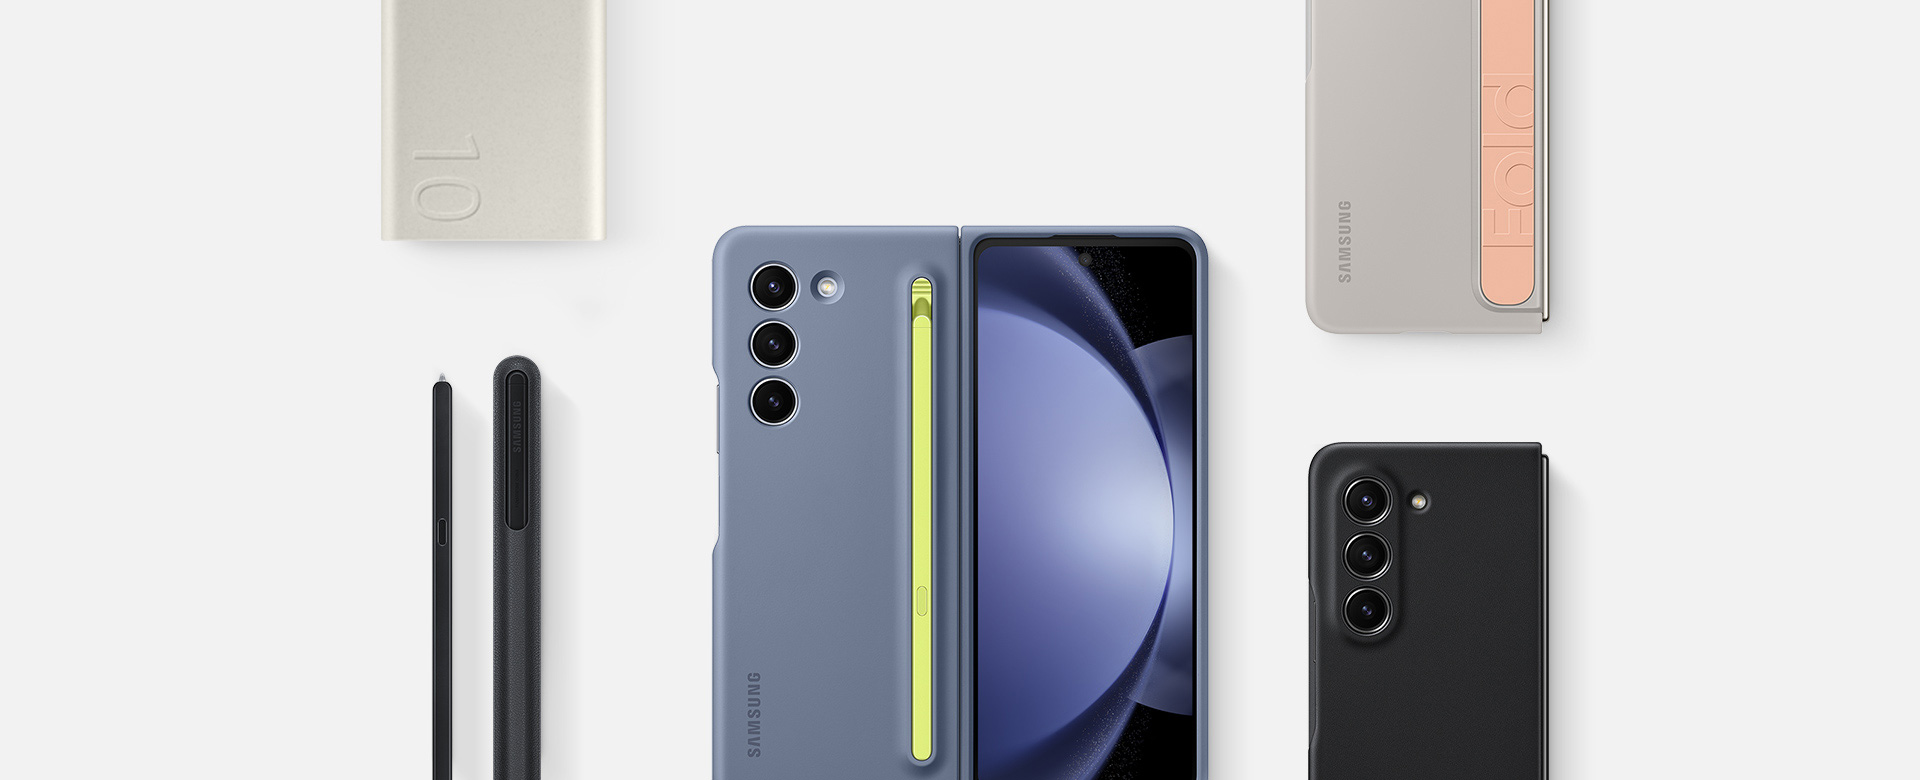 Attēlā redzams šādu Galaxy Fold5: aksesuāru guļus skats: akumulatora komplekts Battery Pack, S Pen Fold Edition irbulis Galaxy Fold5 viedierīcei, kā arī trīs viedierīces ar uzliktiem ietvariem, tai skaitā Slim S Pen Case ledus zilā krāsā, stāvošs ietvars ar siksniņu smilškrāsā un videi draudzīgs ādas maciņš melnā krāsā.